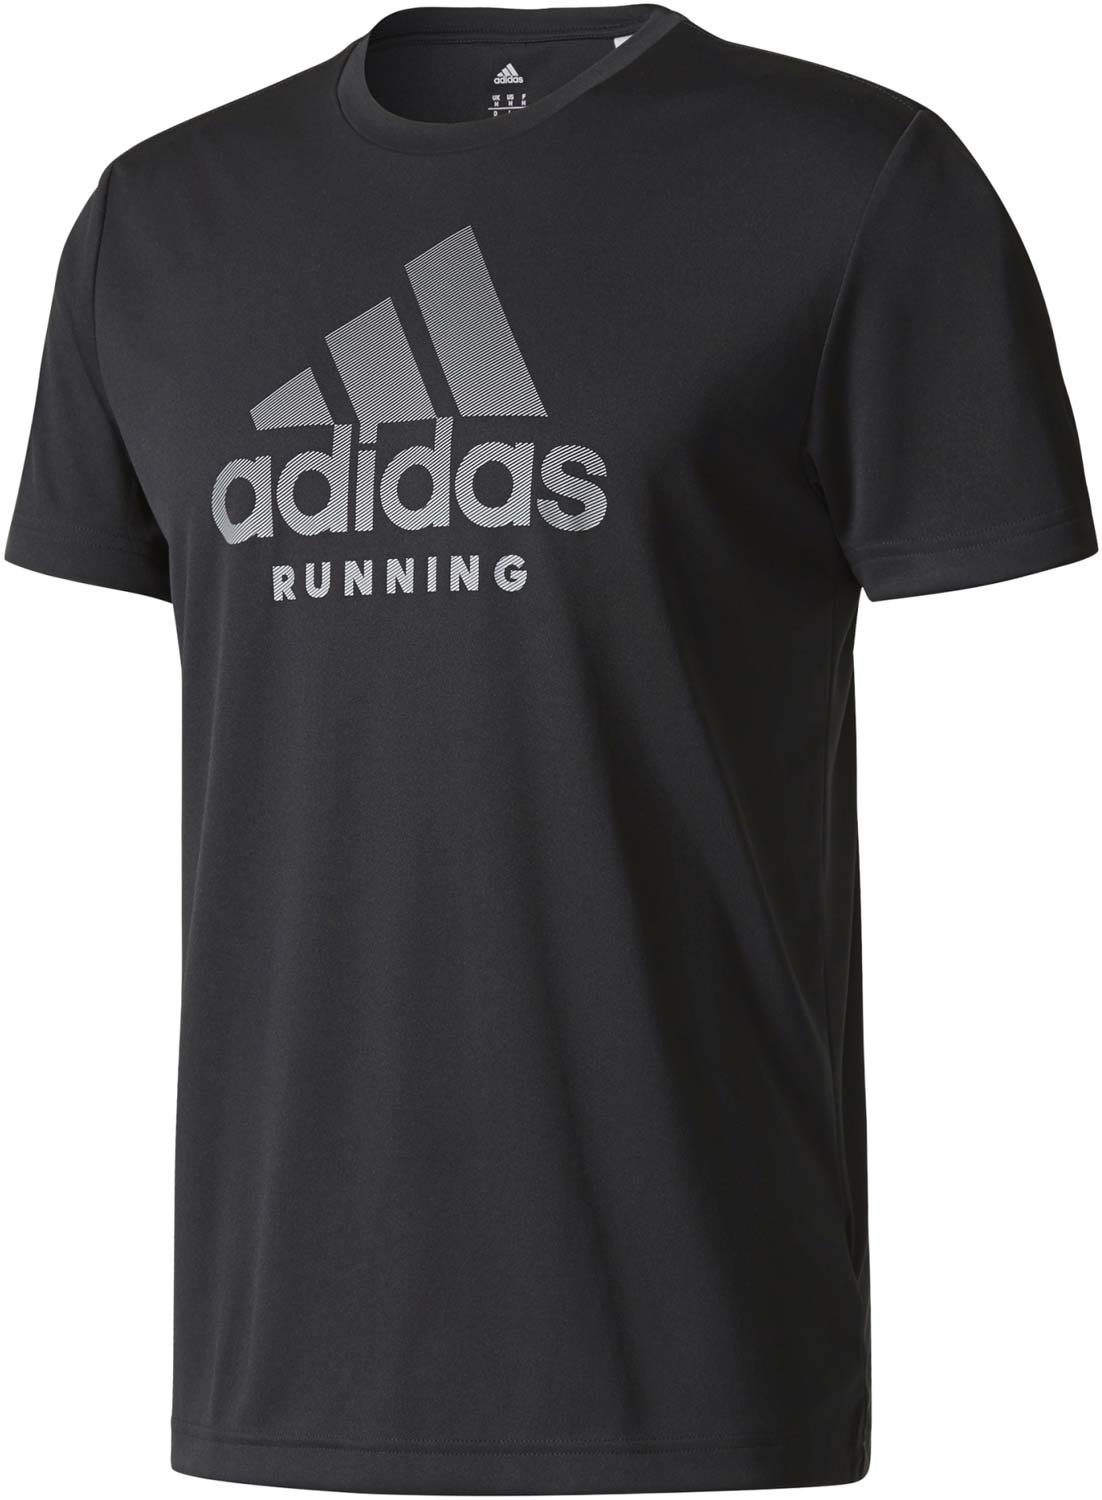 Men’s running T-shirt